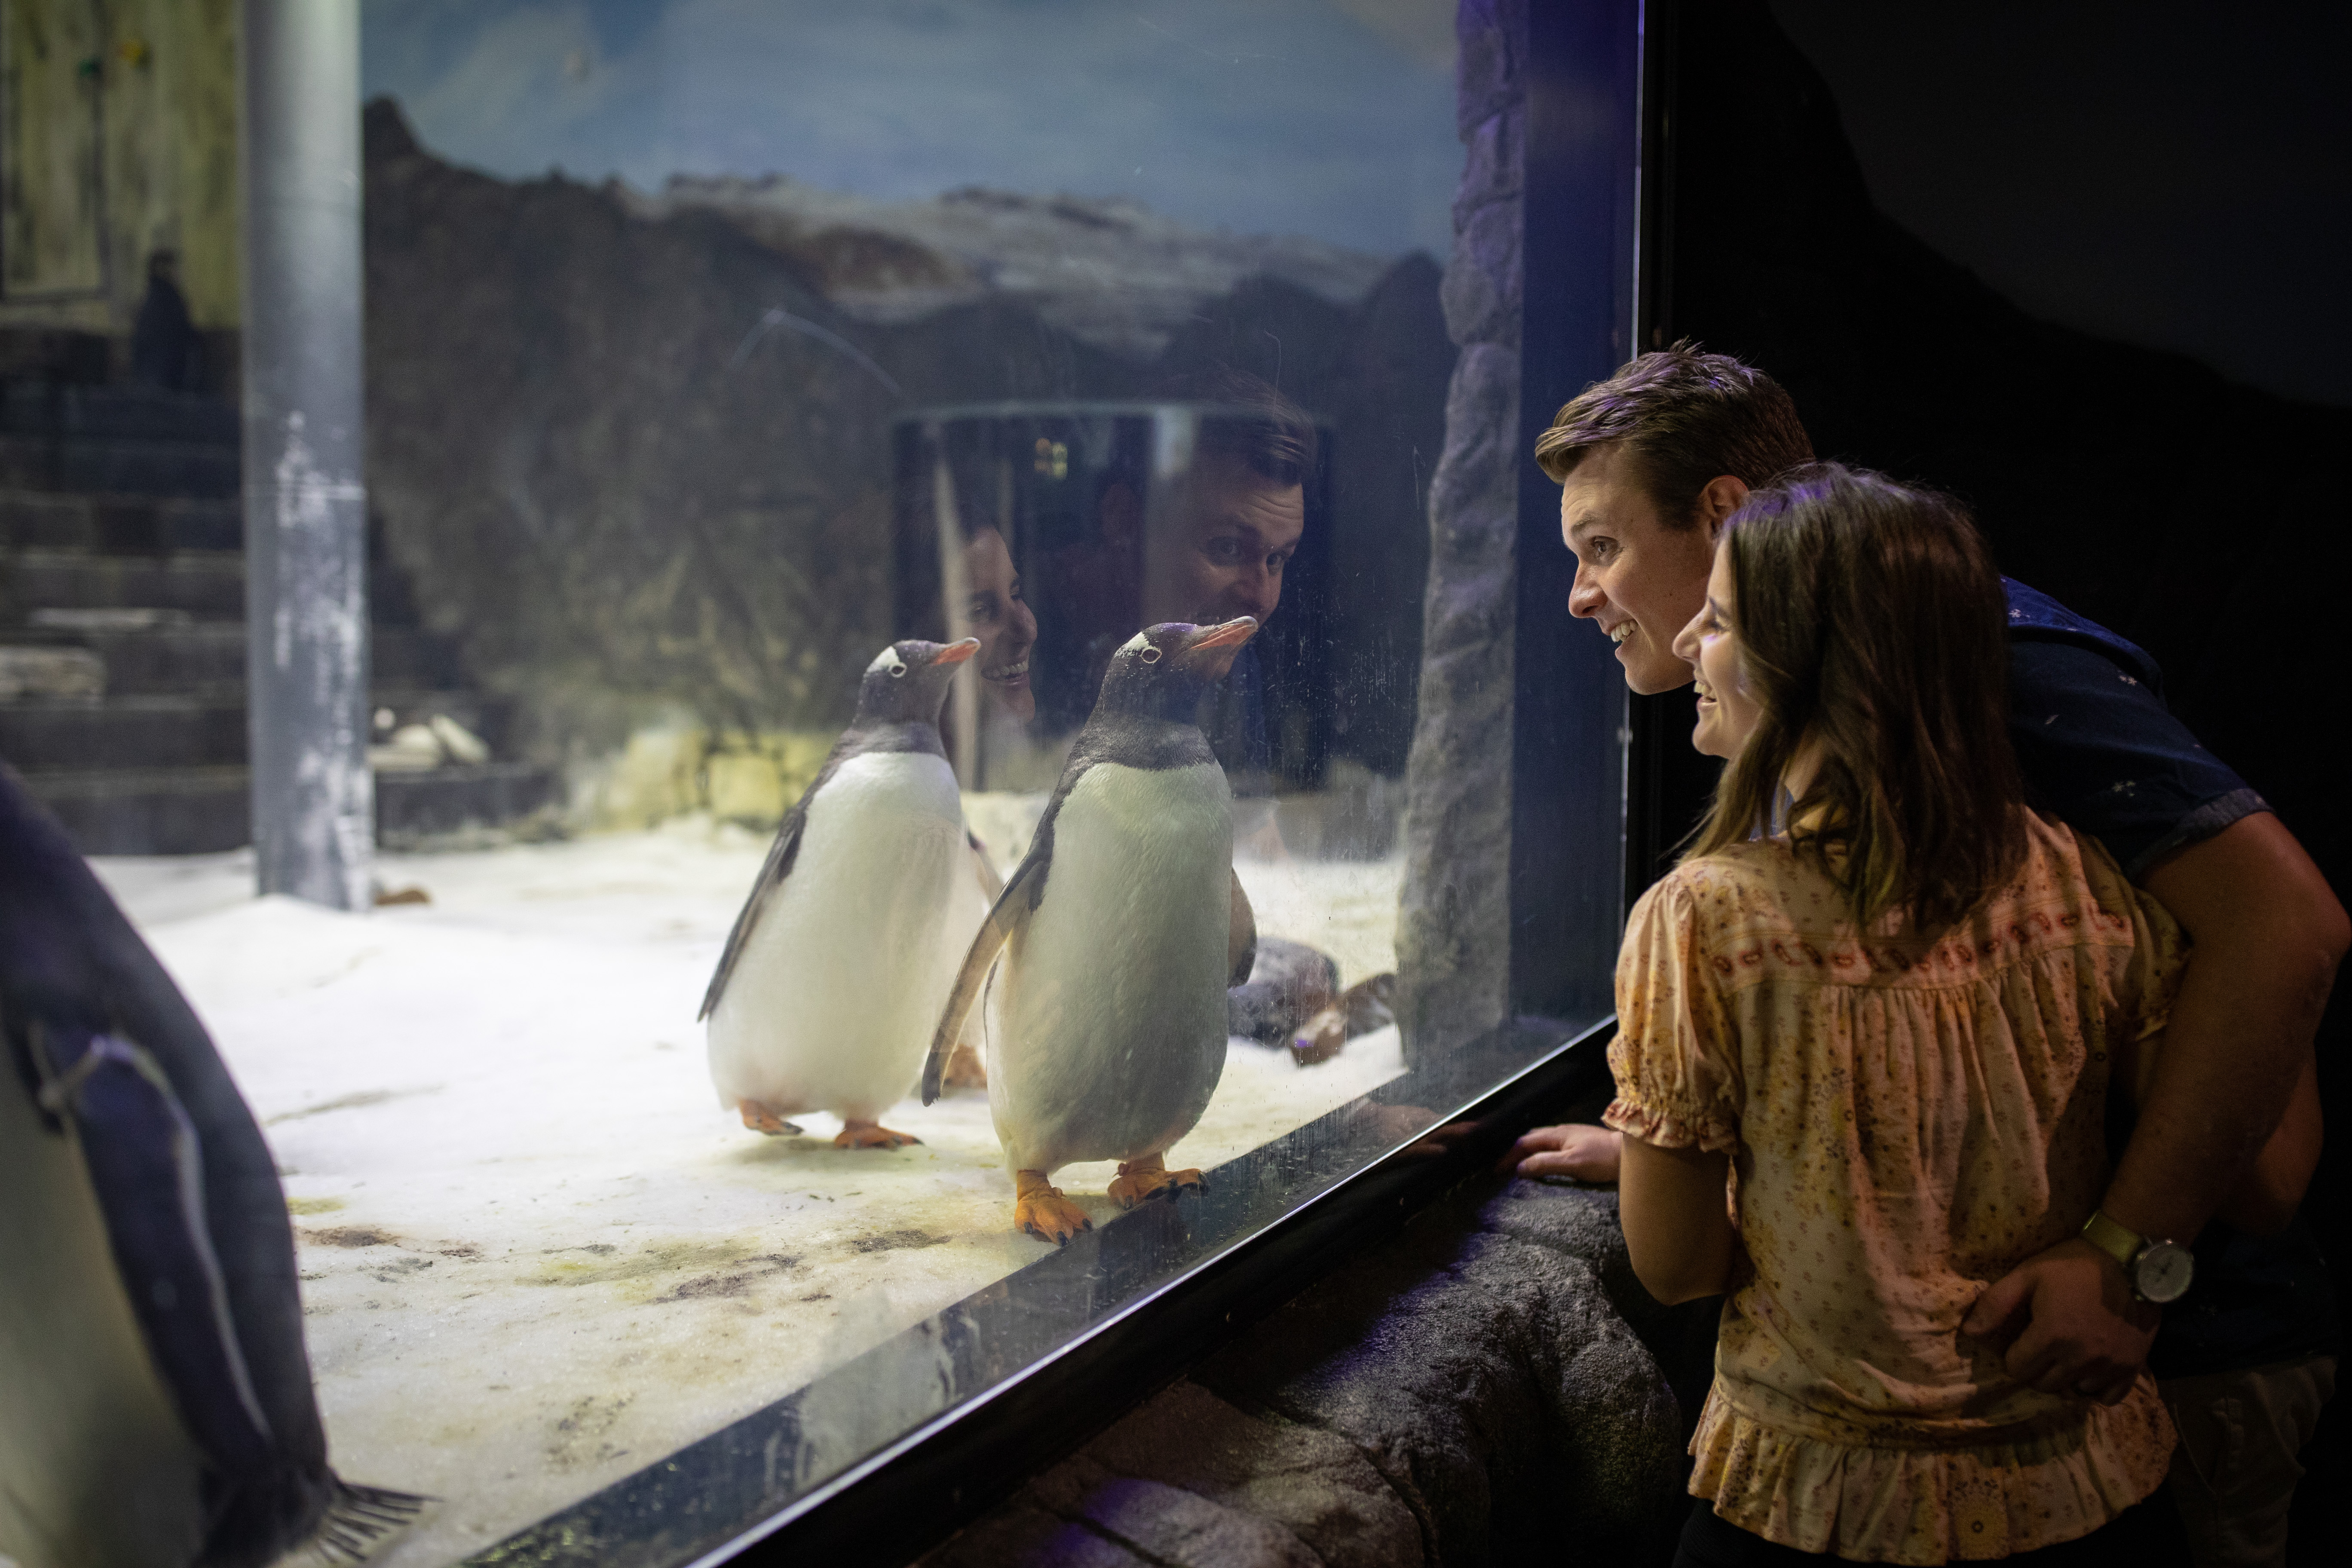 SEA LIFE Sydney Aquarium Guests Admiring Gentoo Penguins